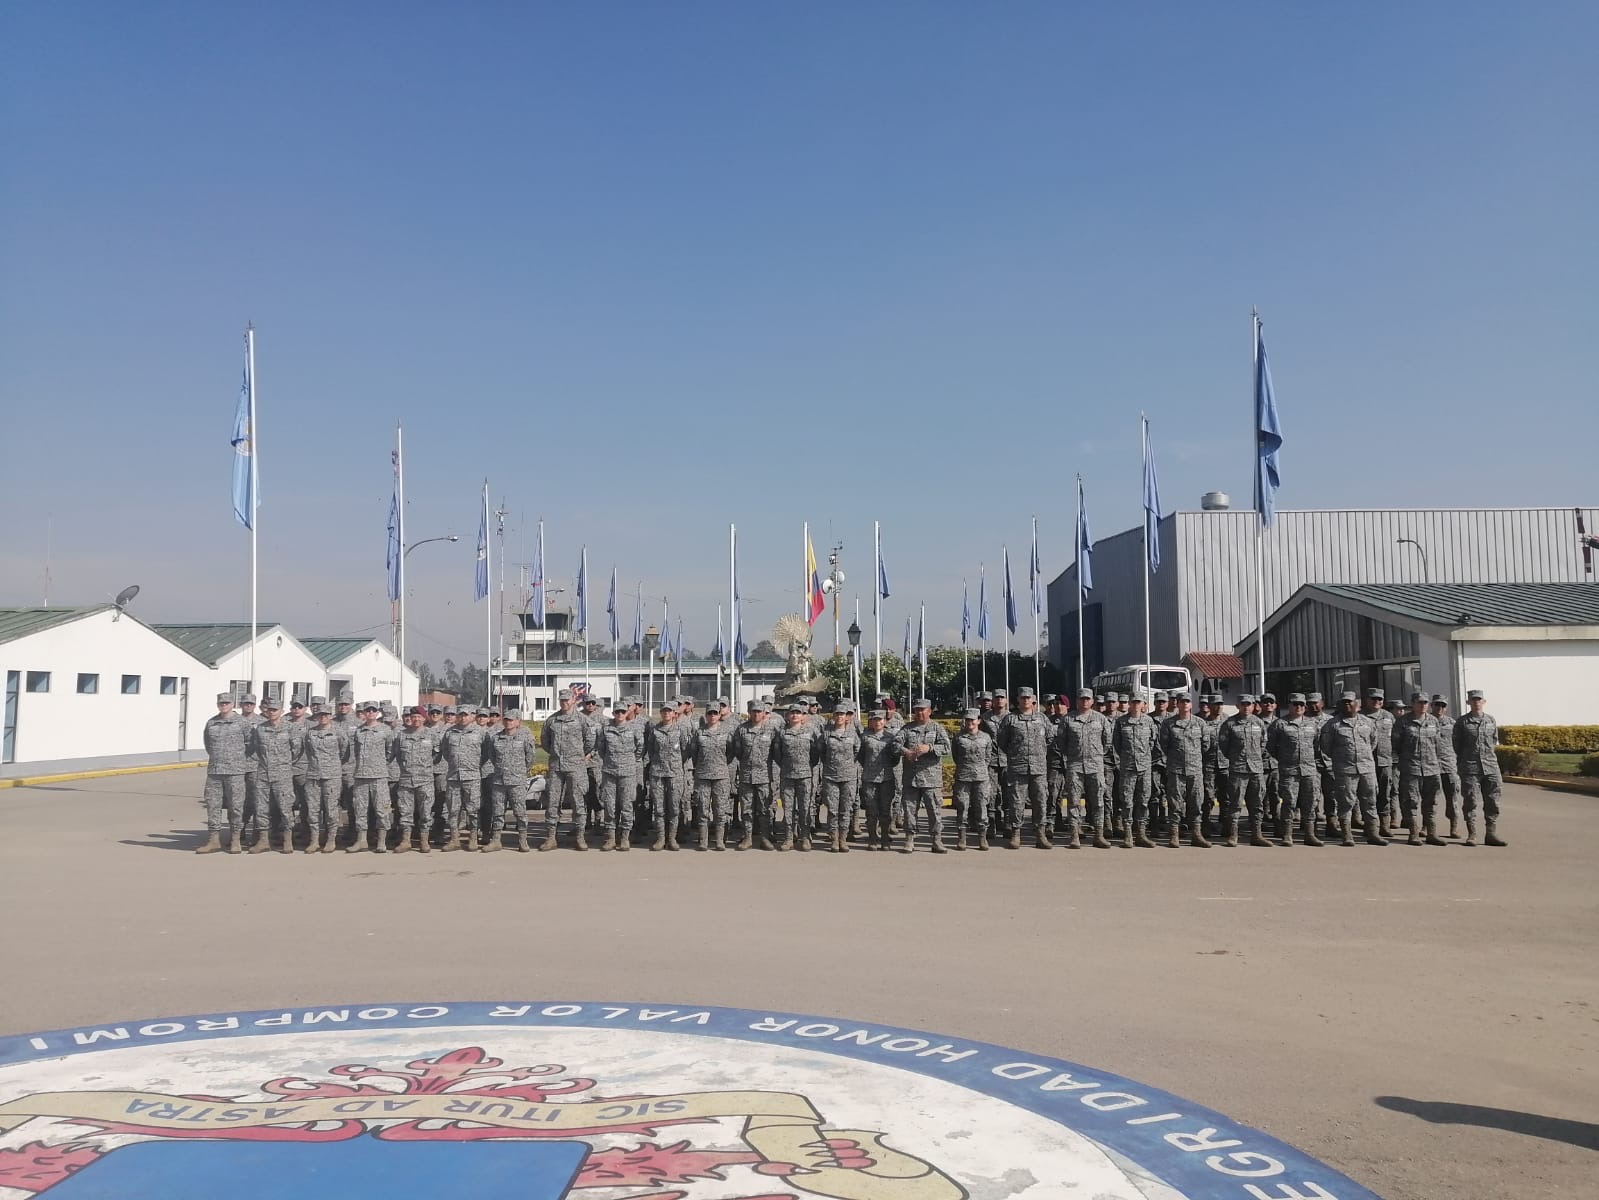 Capacidades del Comando Aéreo de Mantenimiento fueron presentadas a los cursos de ascenso de la EPFAC